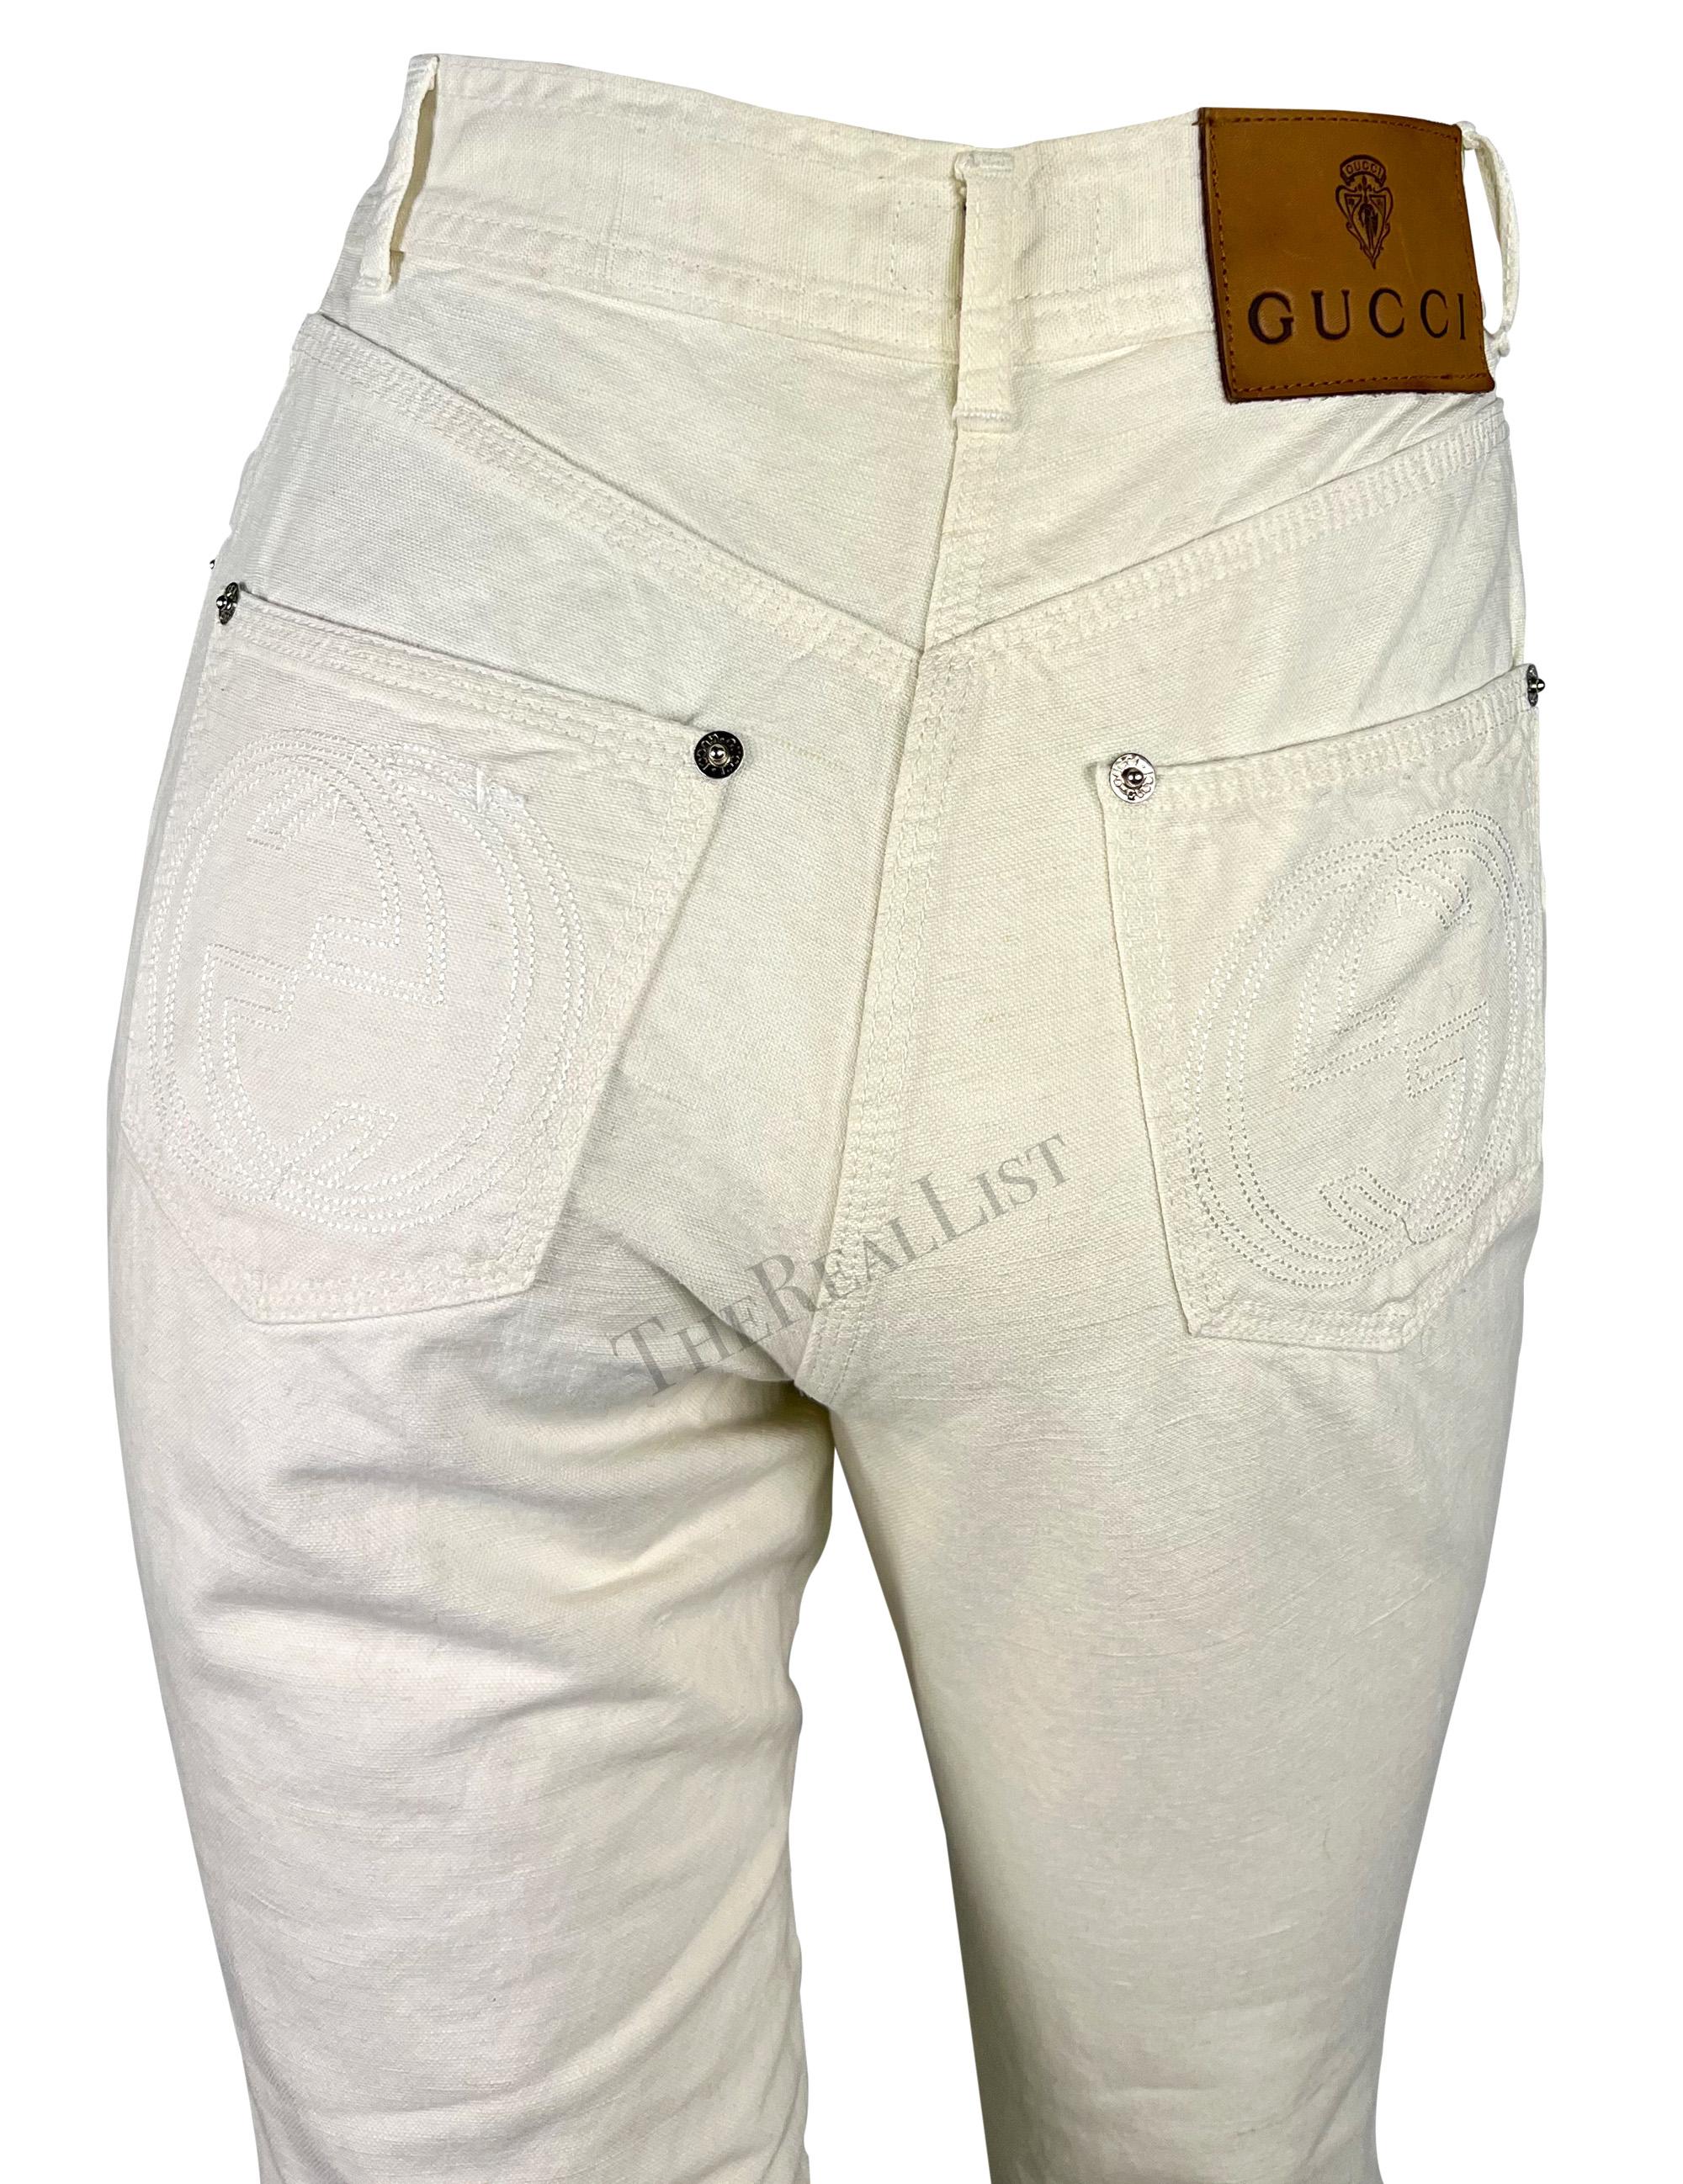 Ich präsentiere eine Gucci-Hose aus cremefarbenem Leinen, entworfen von Tom Ford. Diese Hose mit hoher Taille aus der Frühjahr/Sommer-Kollektion 1995 ist aus einer leichten Baumwoll-Leinen-Mischung gefertigt. Die Hose ist mit großen, ineinander